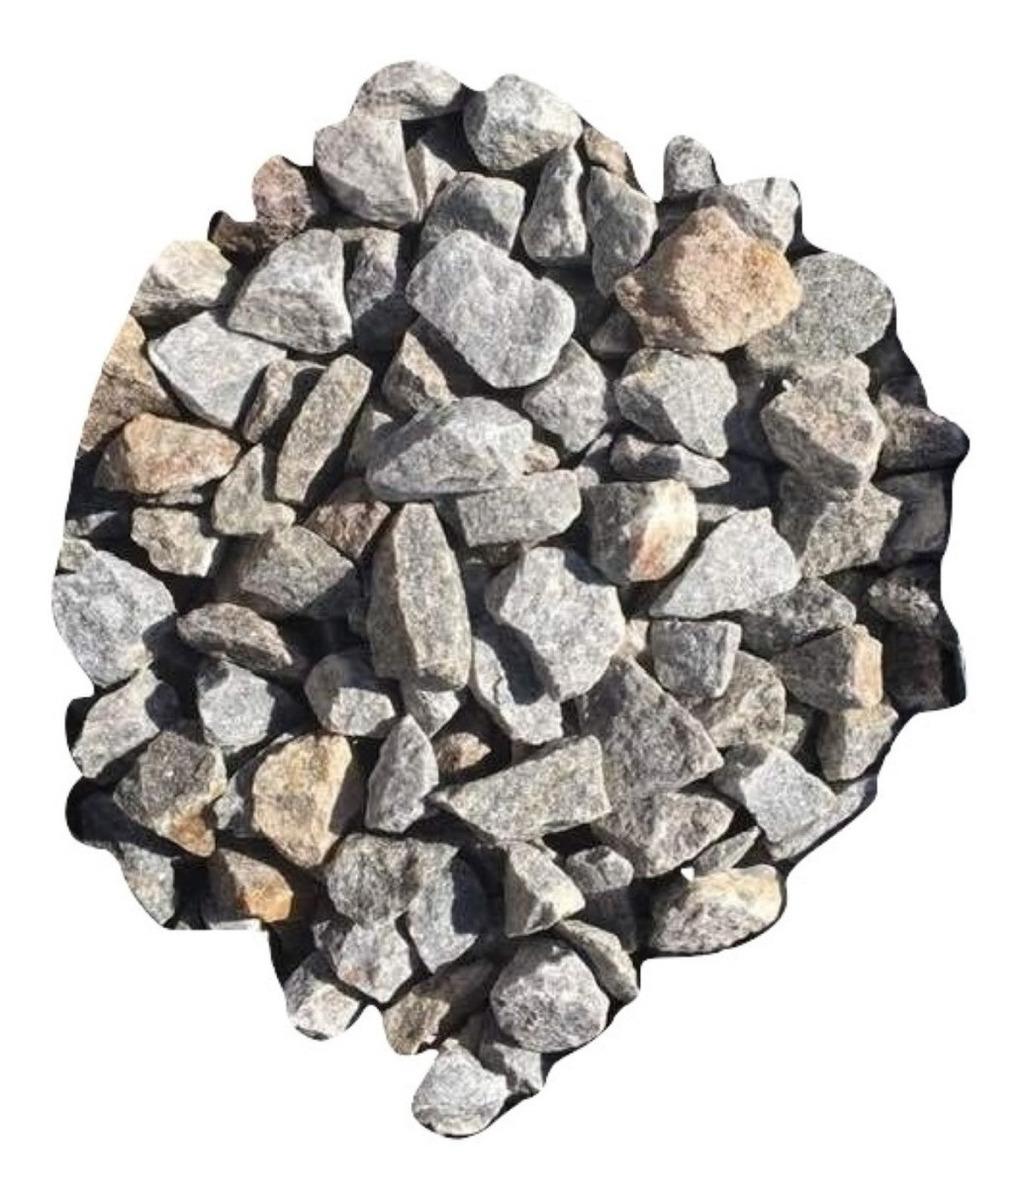 Piedra Partida Gris 20 A 30 Mm Aprox De Granito La Mas Dura - $ 250,00